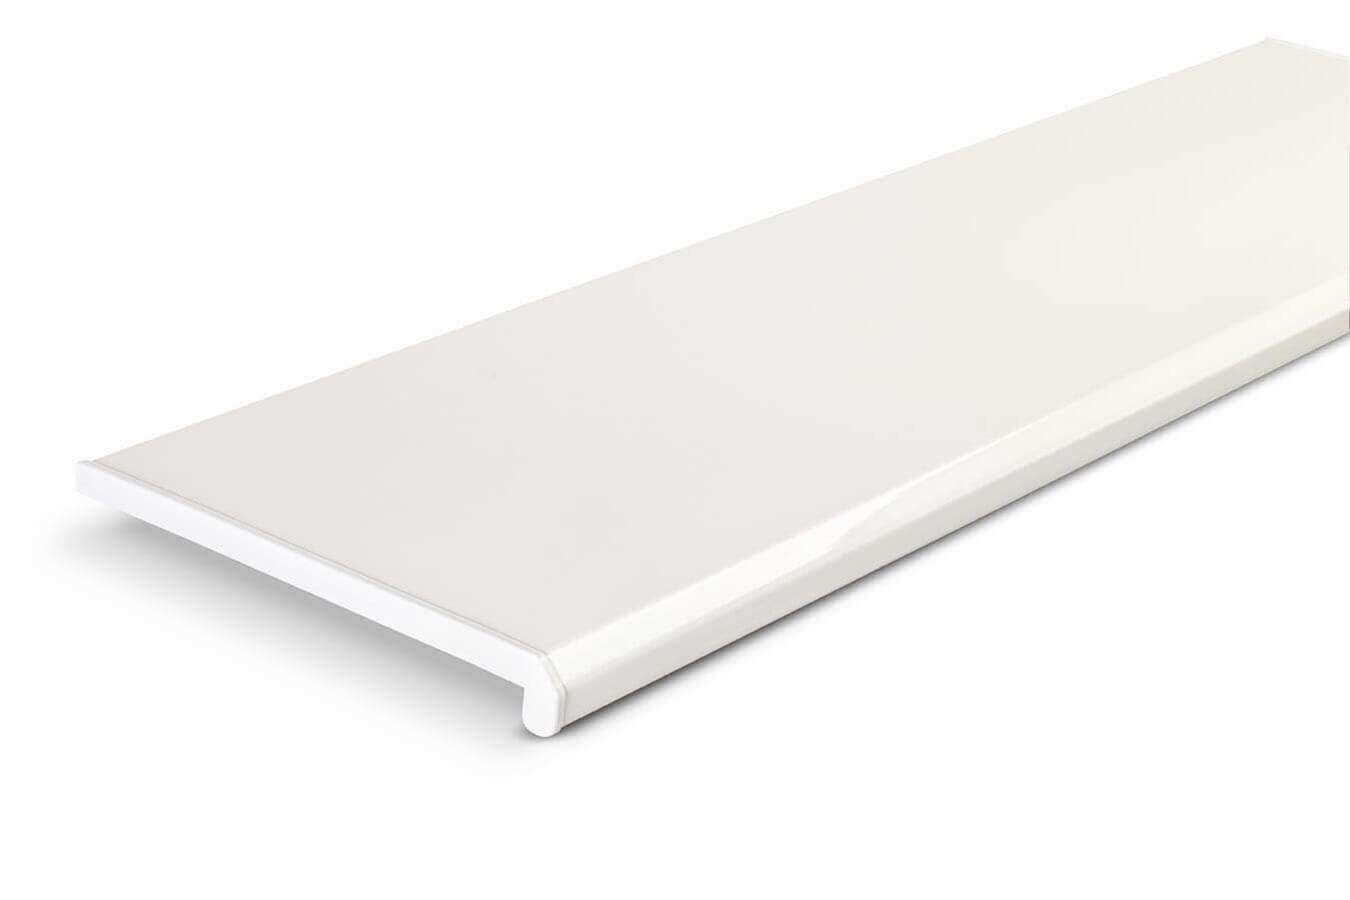 Классический белый цвет с глянцевой шелковистой фактурой поверхности является оптимальным решением для любого современного интерьера